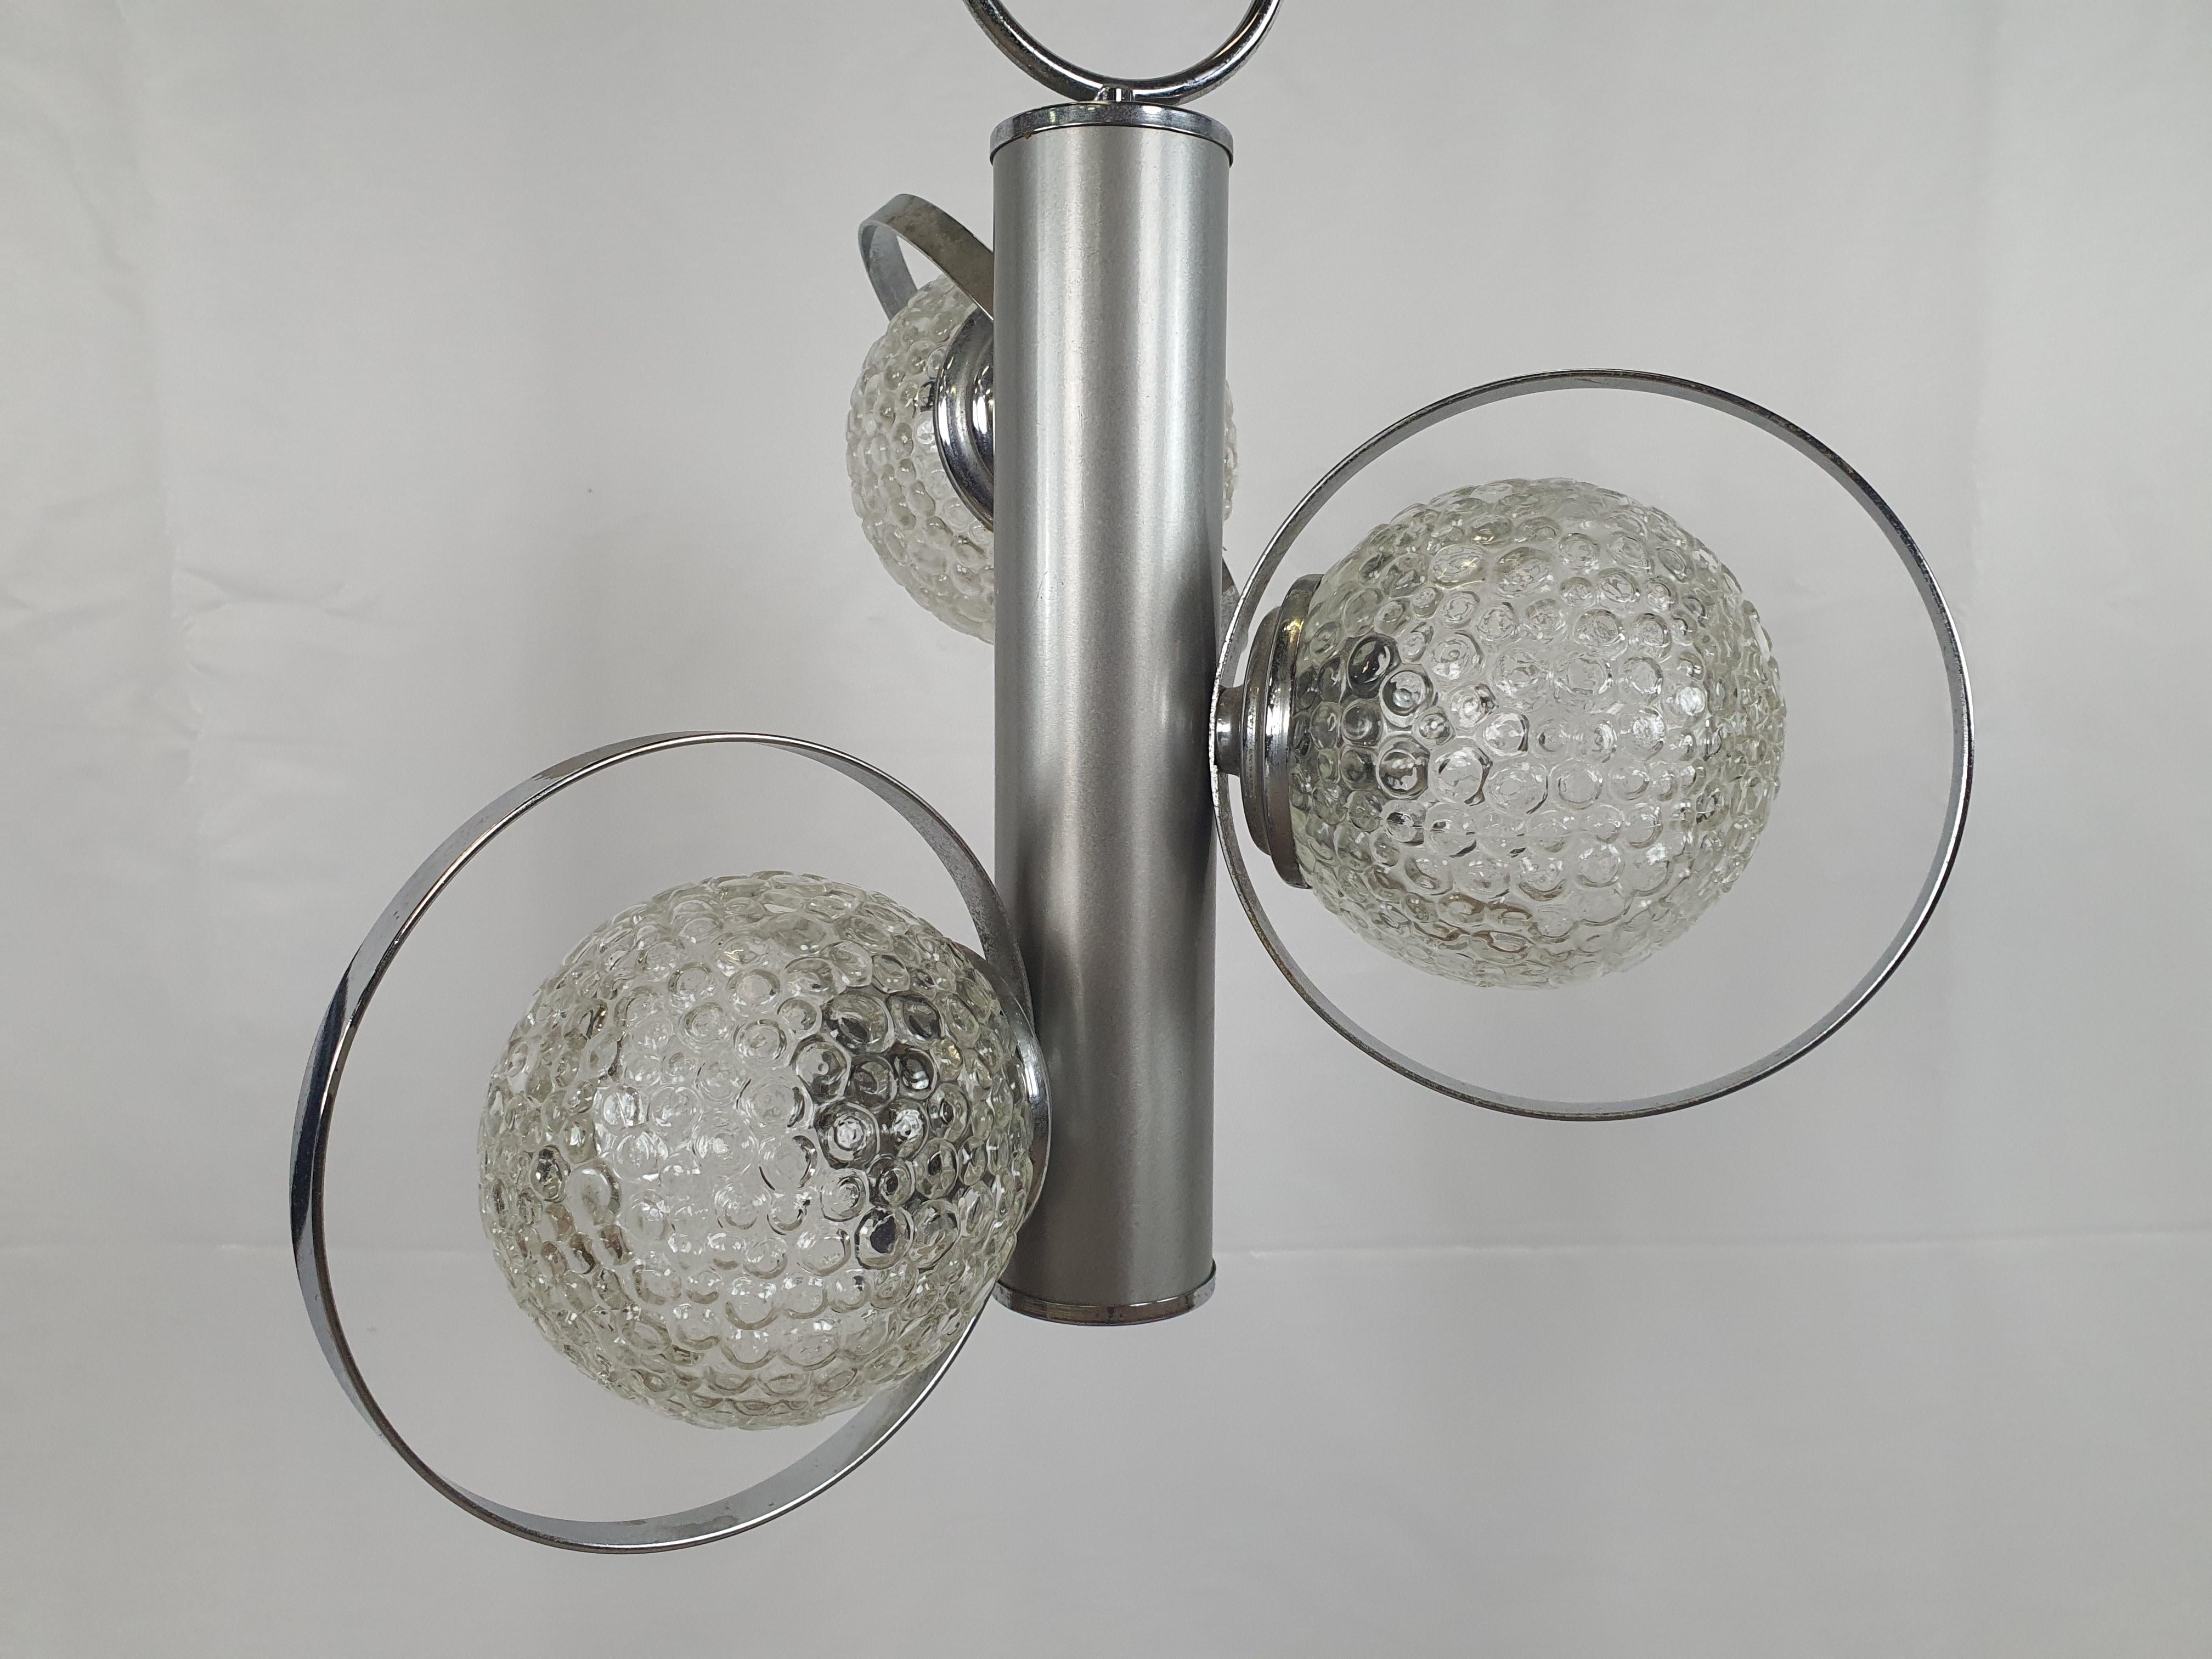 Italienischer Metallkronleuchter aus den 1970er Jahren mit 3 Lichtpunkten in gearbeiteten Glaskugeln.

Hat normale alters- und gebrauchsbedingte Gebrauchsspuren.
Wir empfehlen, die elektrischen Teile und/oder die elektrische Anlage zu ersetzen,